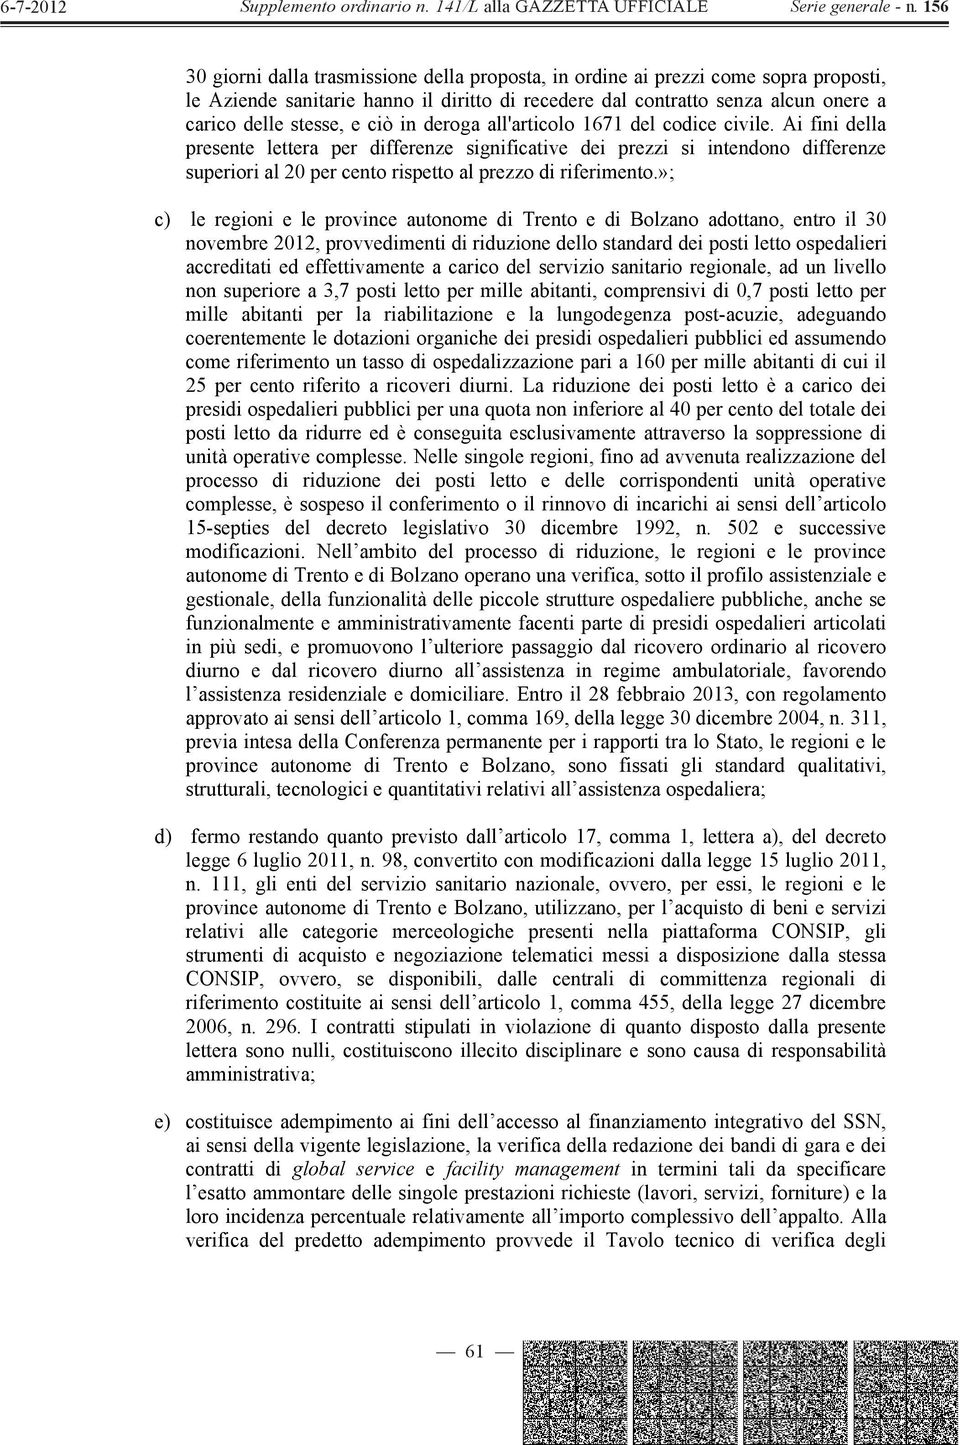 »; c) le regioni e le province autonome di Trento e di Bolzano adottano, entro il 30 novembre 2012, provvedimenti di riduzione dello standard dei posti letto ospedalieri accreditati ed effettivamente